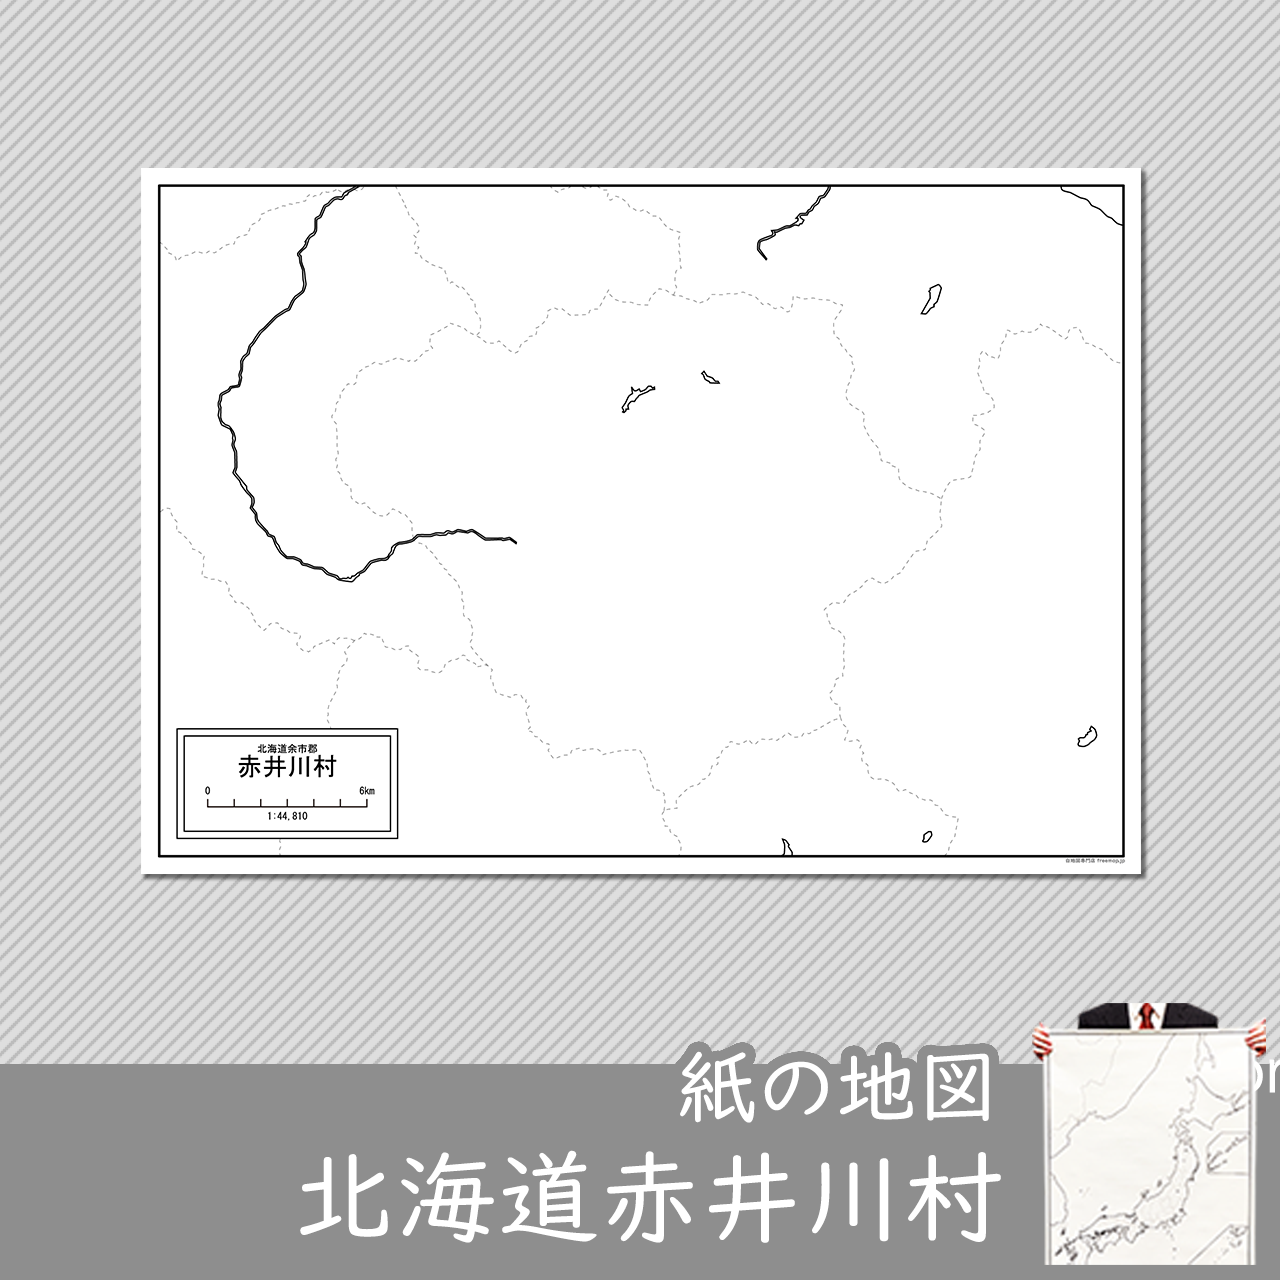 赤井川村の紙の白地図のサムネイル